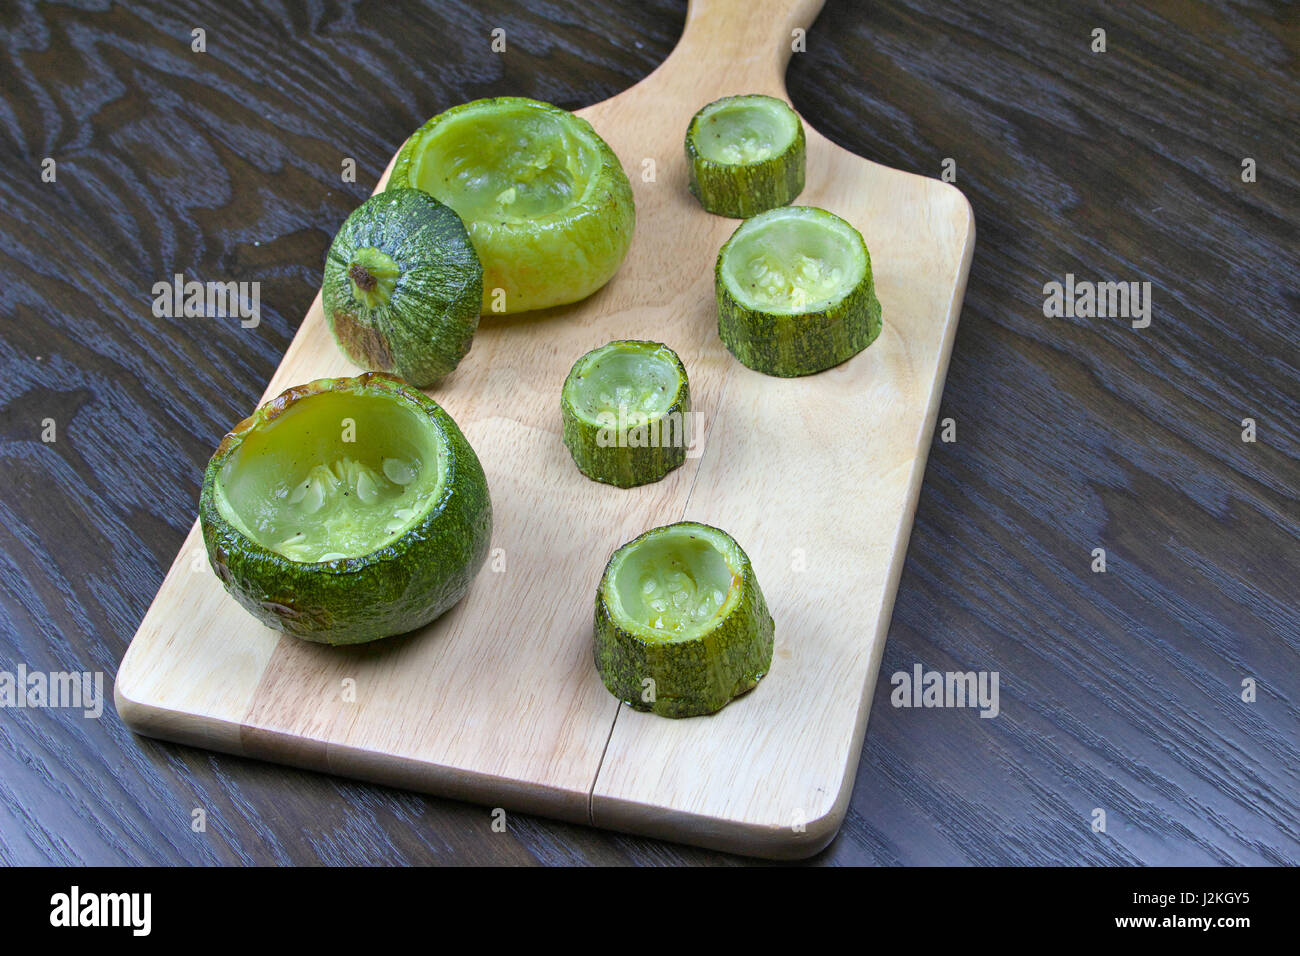 Entleerte Zucchini (Zucchini) auf Holzbrett liegend auf einem dunklen Holztisch - gefüllte Zucchini Rezept Stockfoto